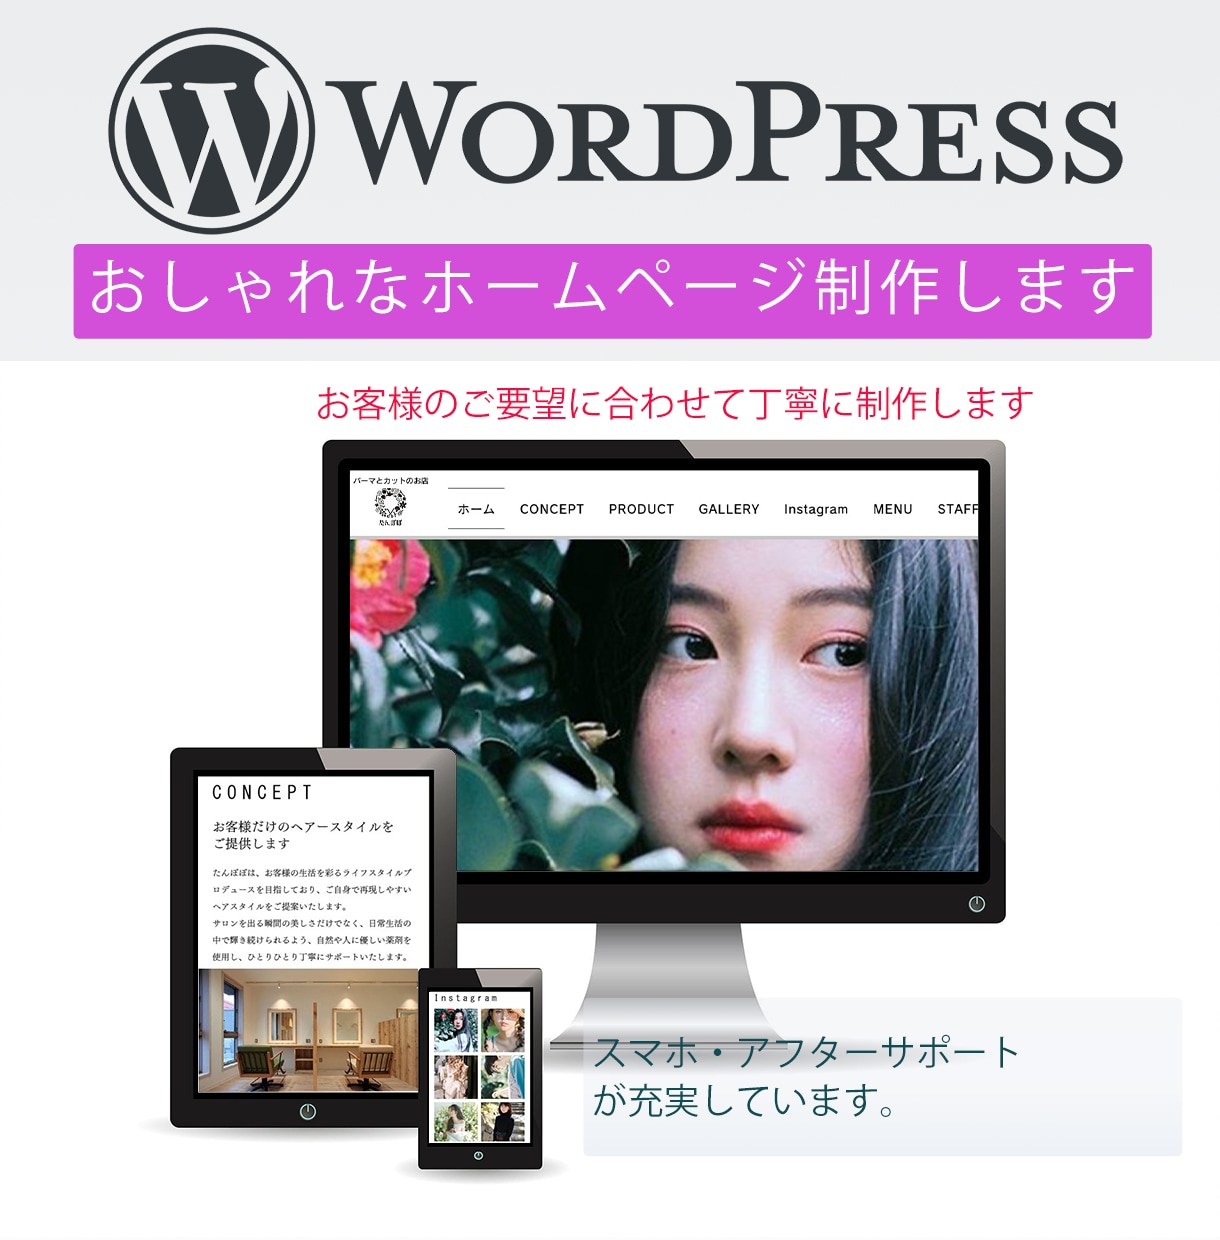 WordPressで素敵なホームページを制作します "ユーザーに伝わる"本格的なサイトをご提供します。 イメージ1